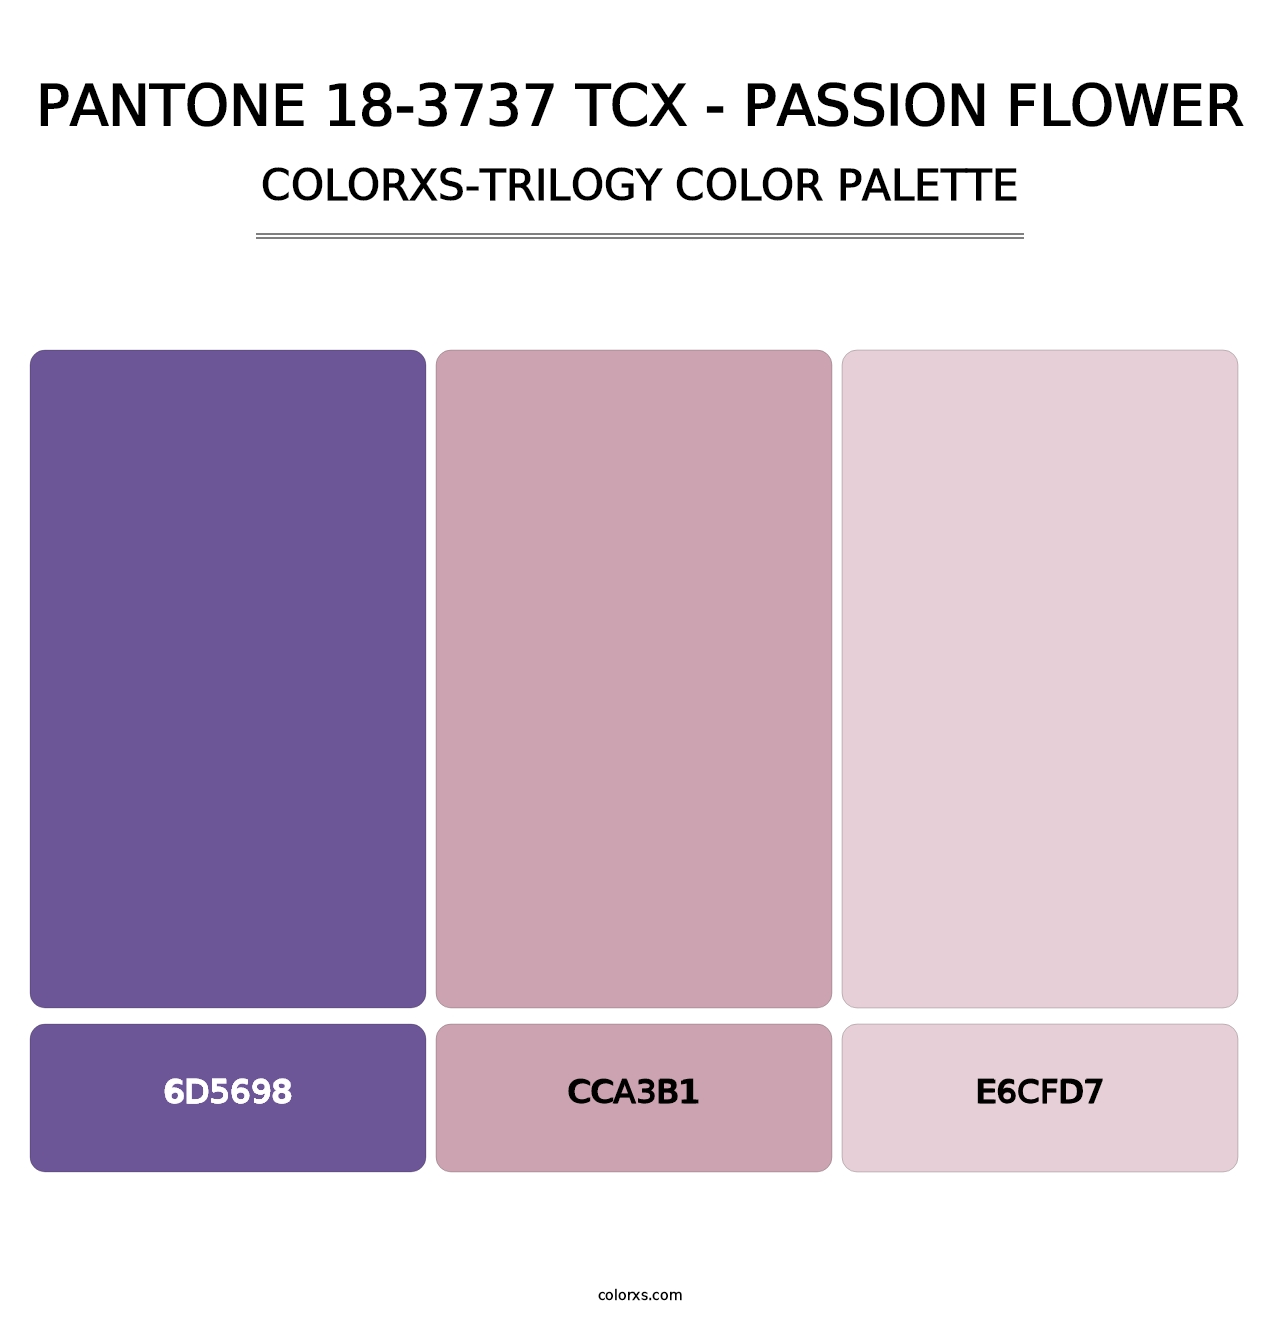 PANTONE 18-3737 TCX - Passion Flower - Colorxs Trilogy Palette